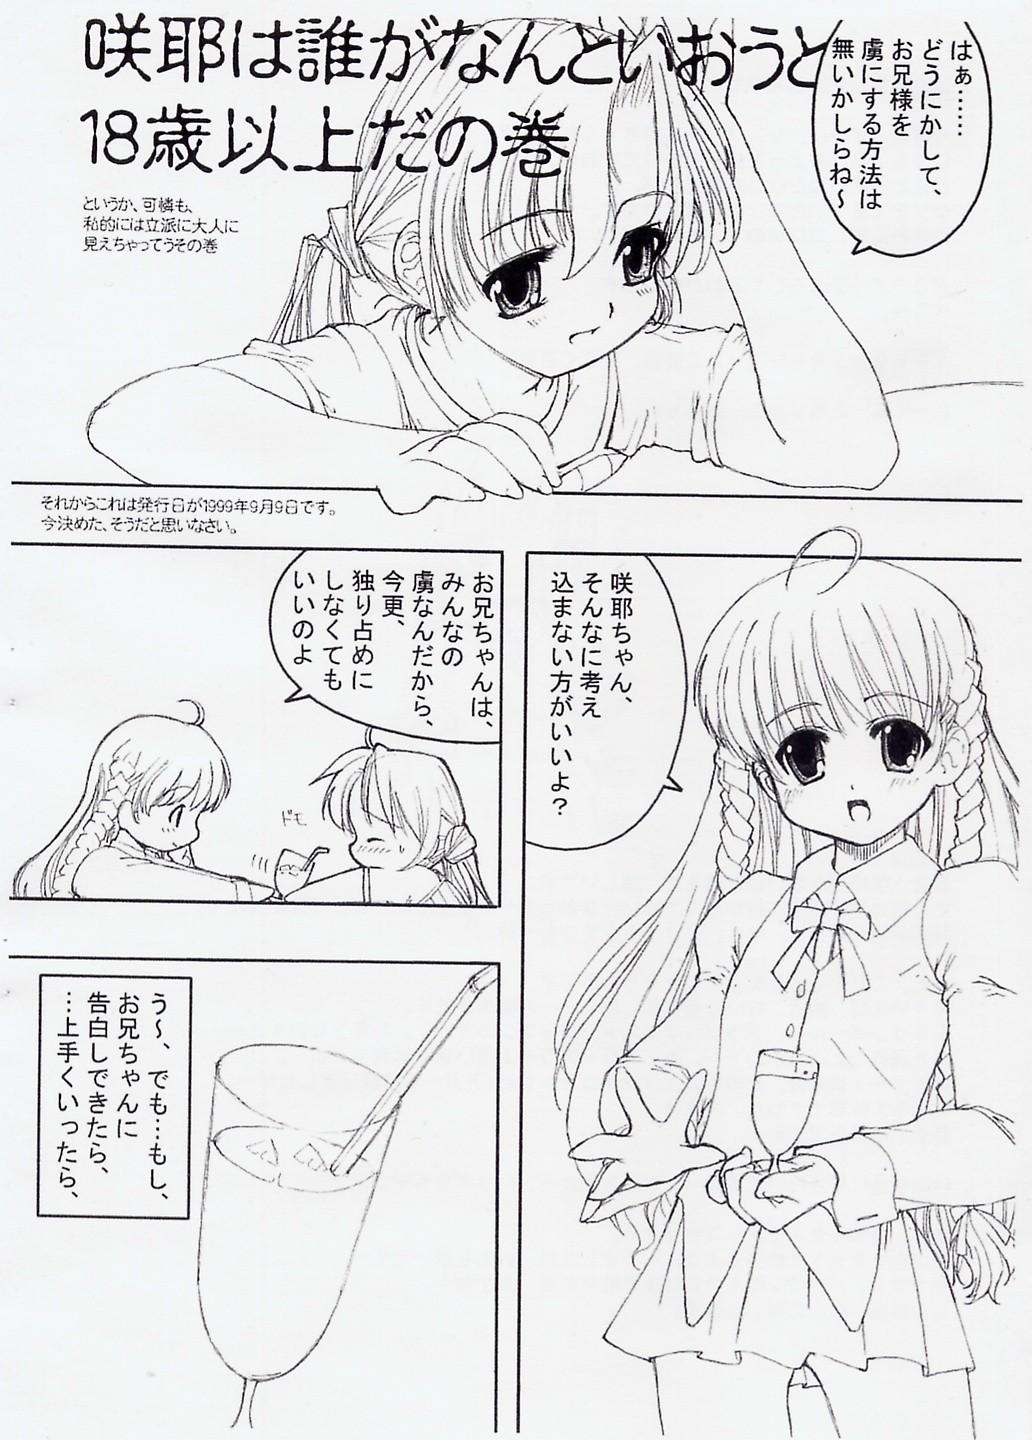 18 Porn Sakuya's Note - Sister princess Cavala - Page 3